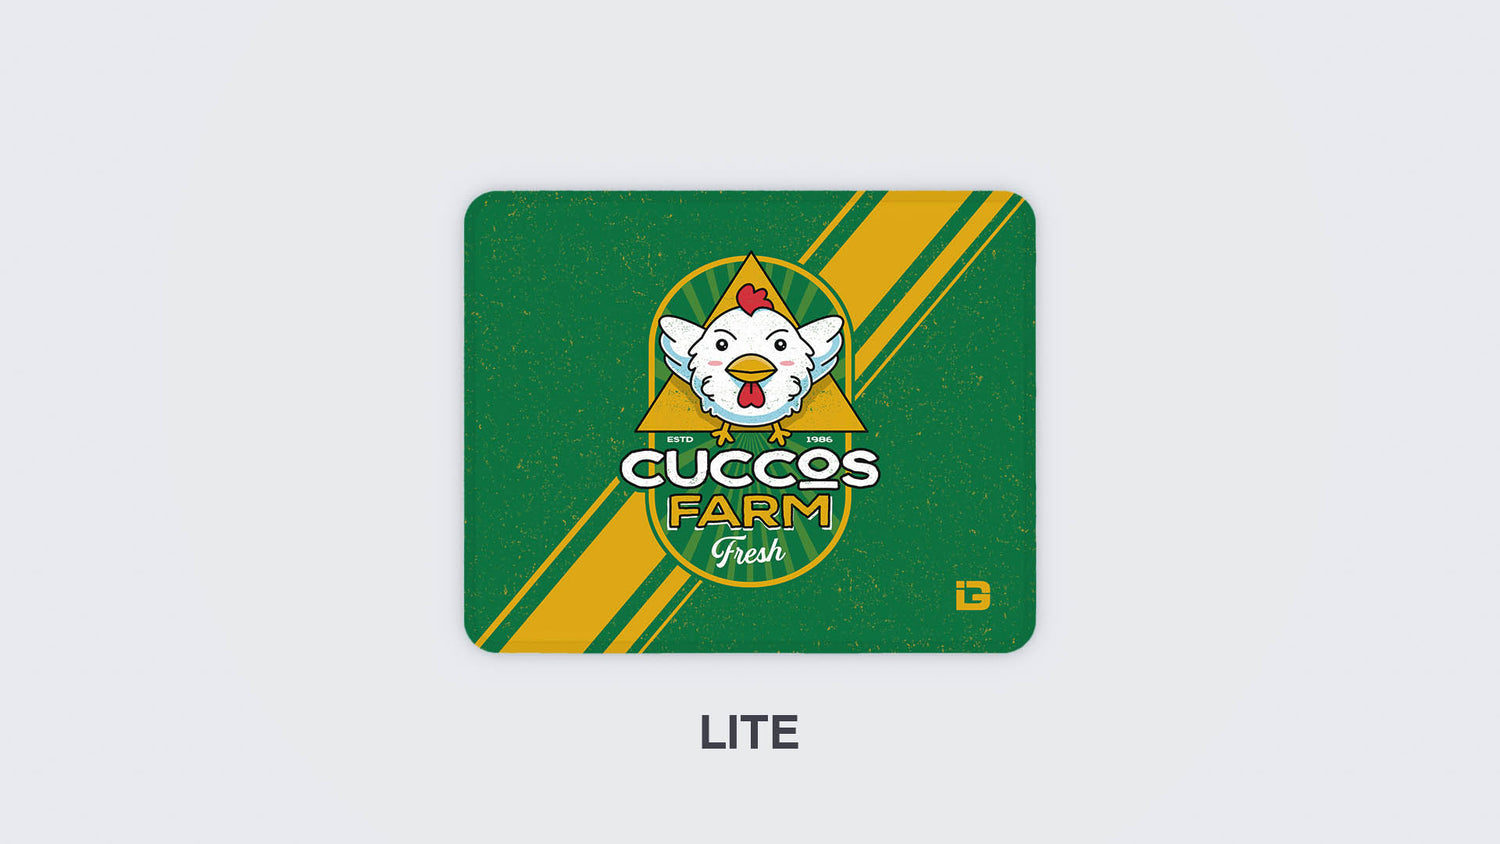 Cuccos Farm Crest